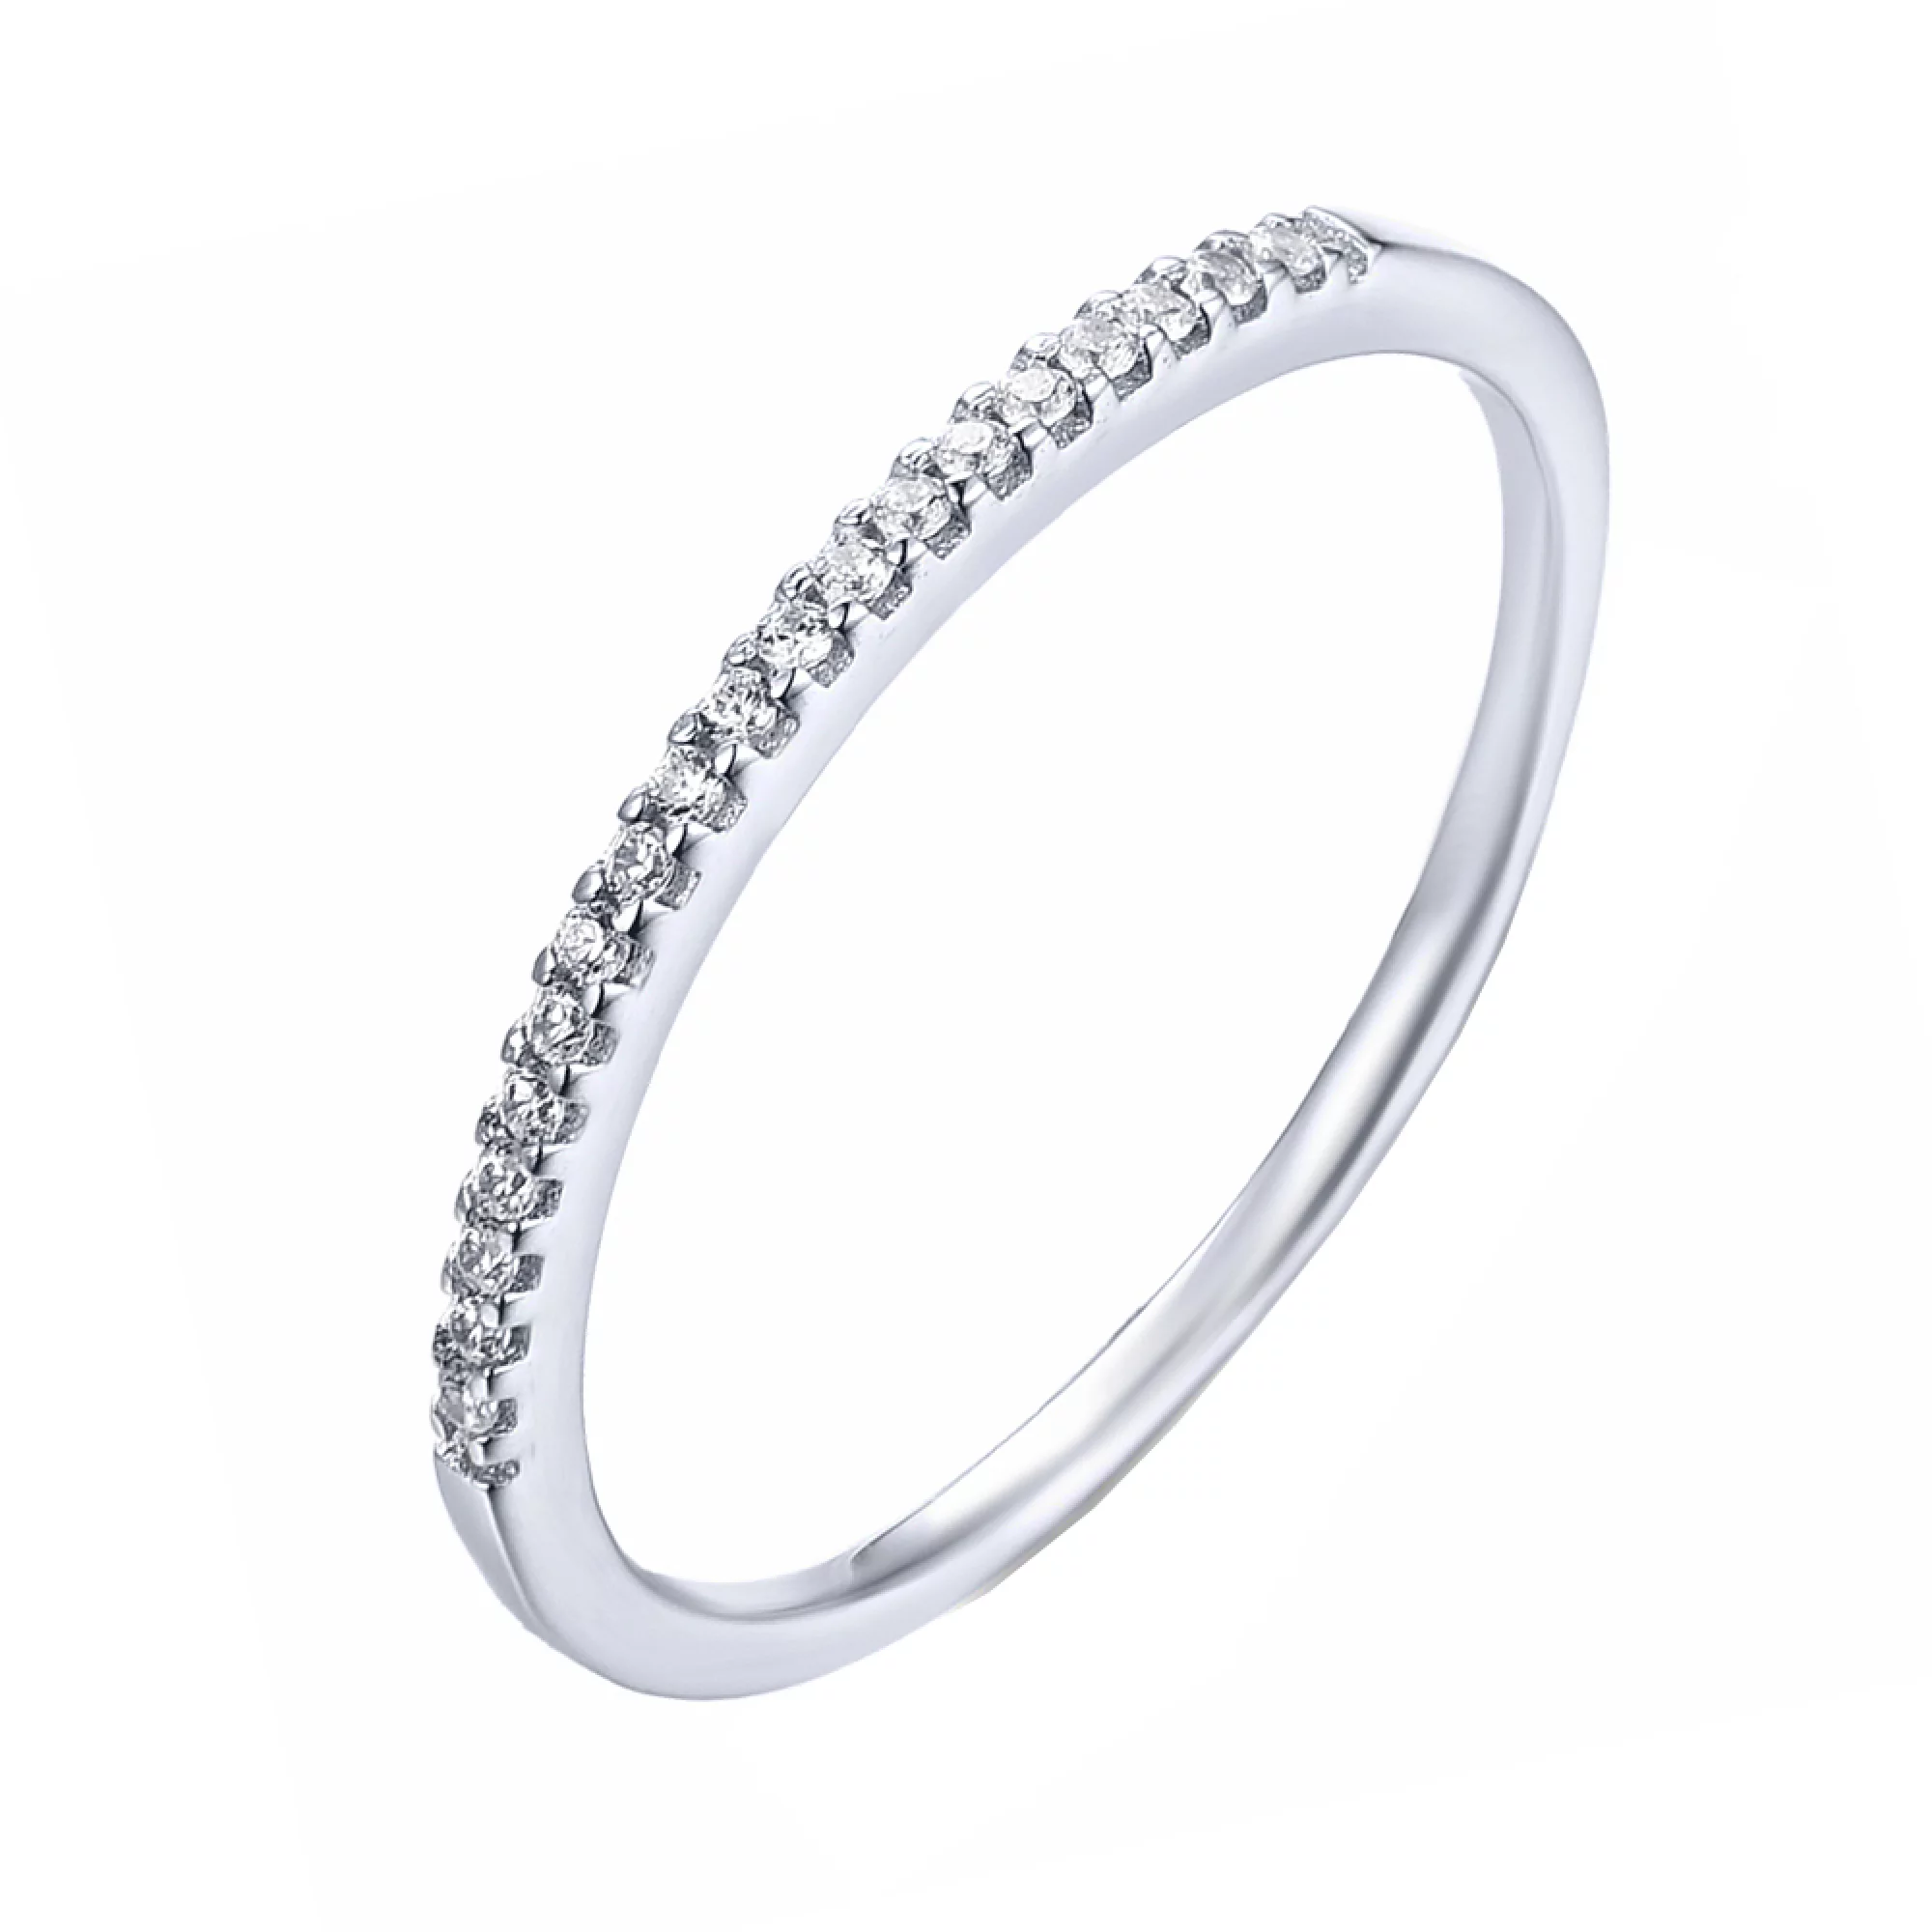 Тонкое серебряное кольцо с дорожкой фианитов - 1618113 – изображение 1